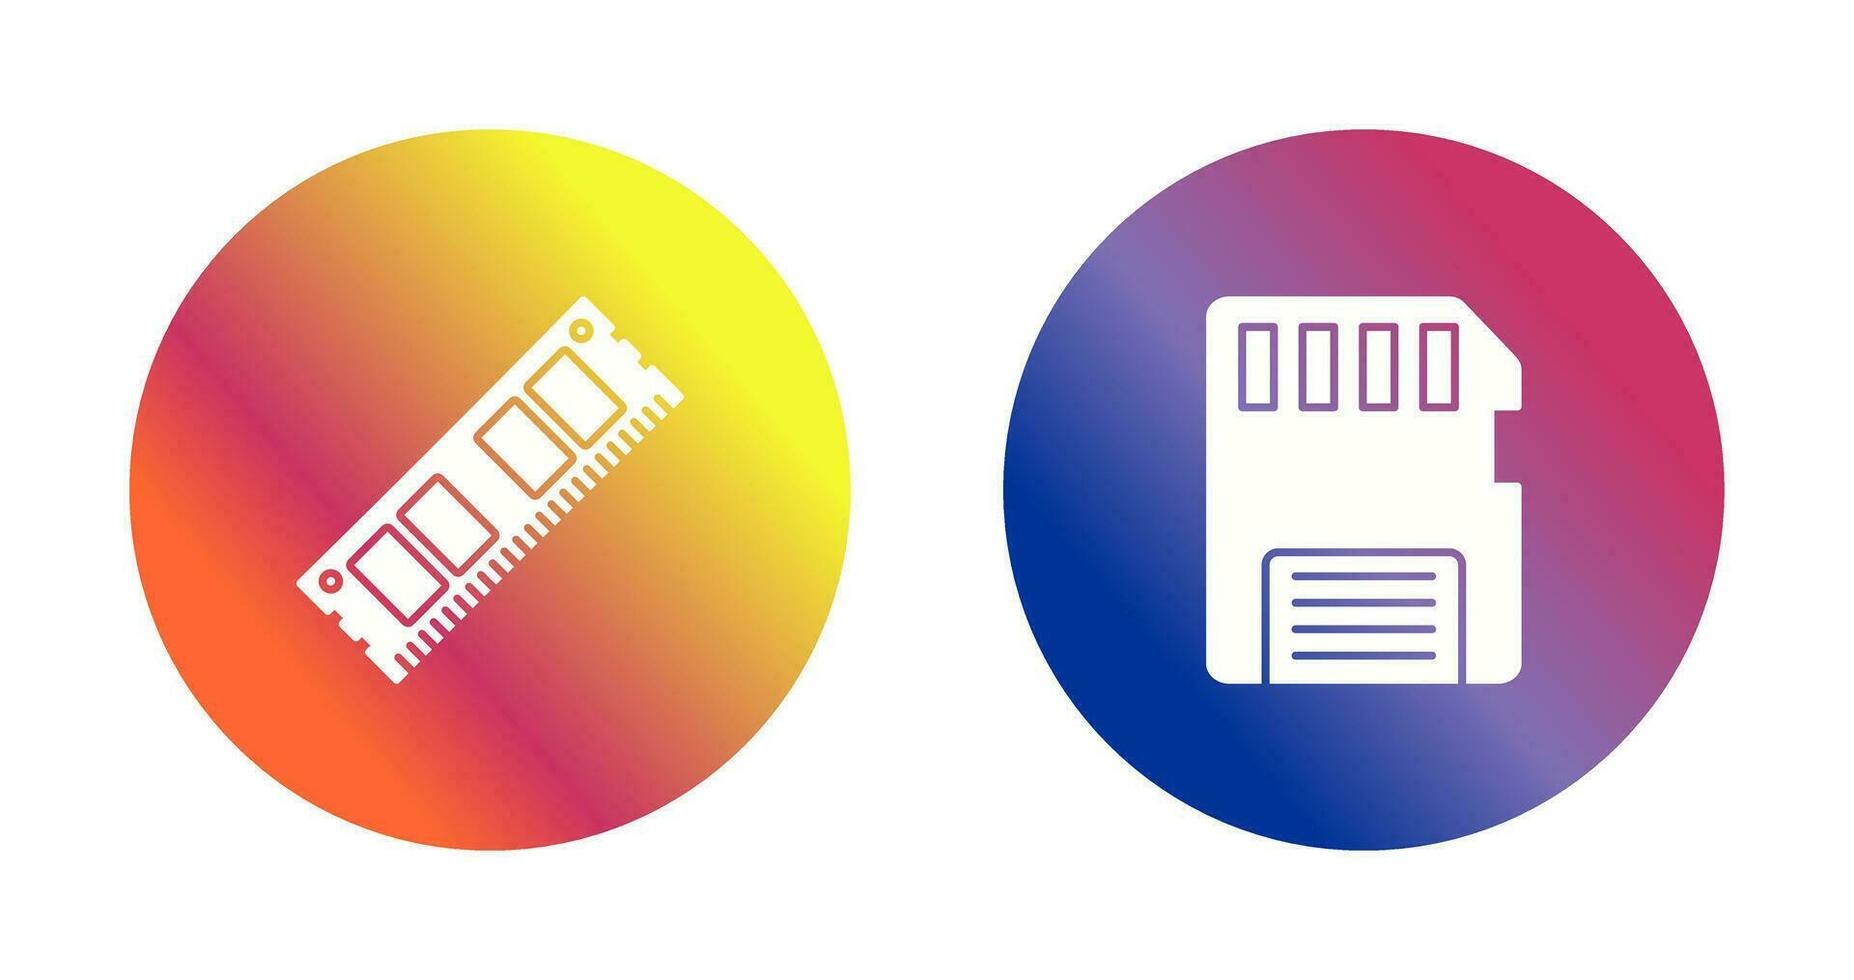 RAM y memoria tarjeta icono vector